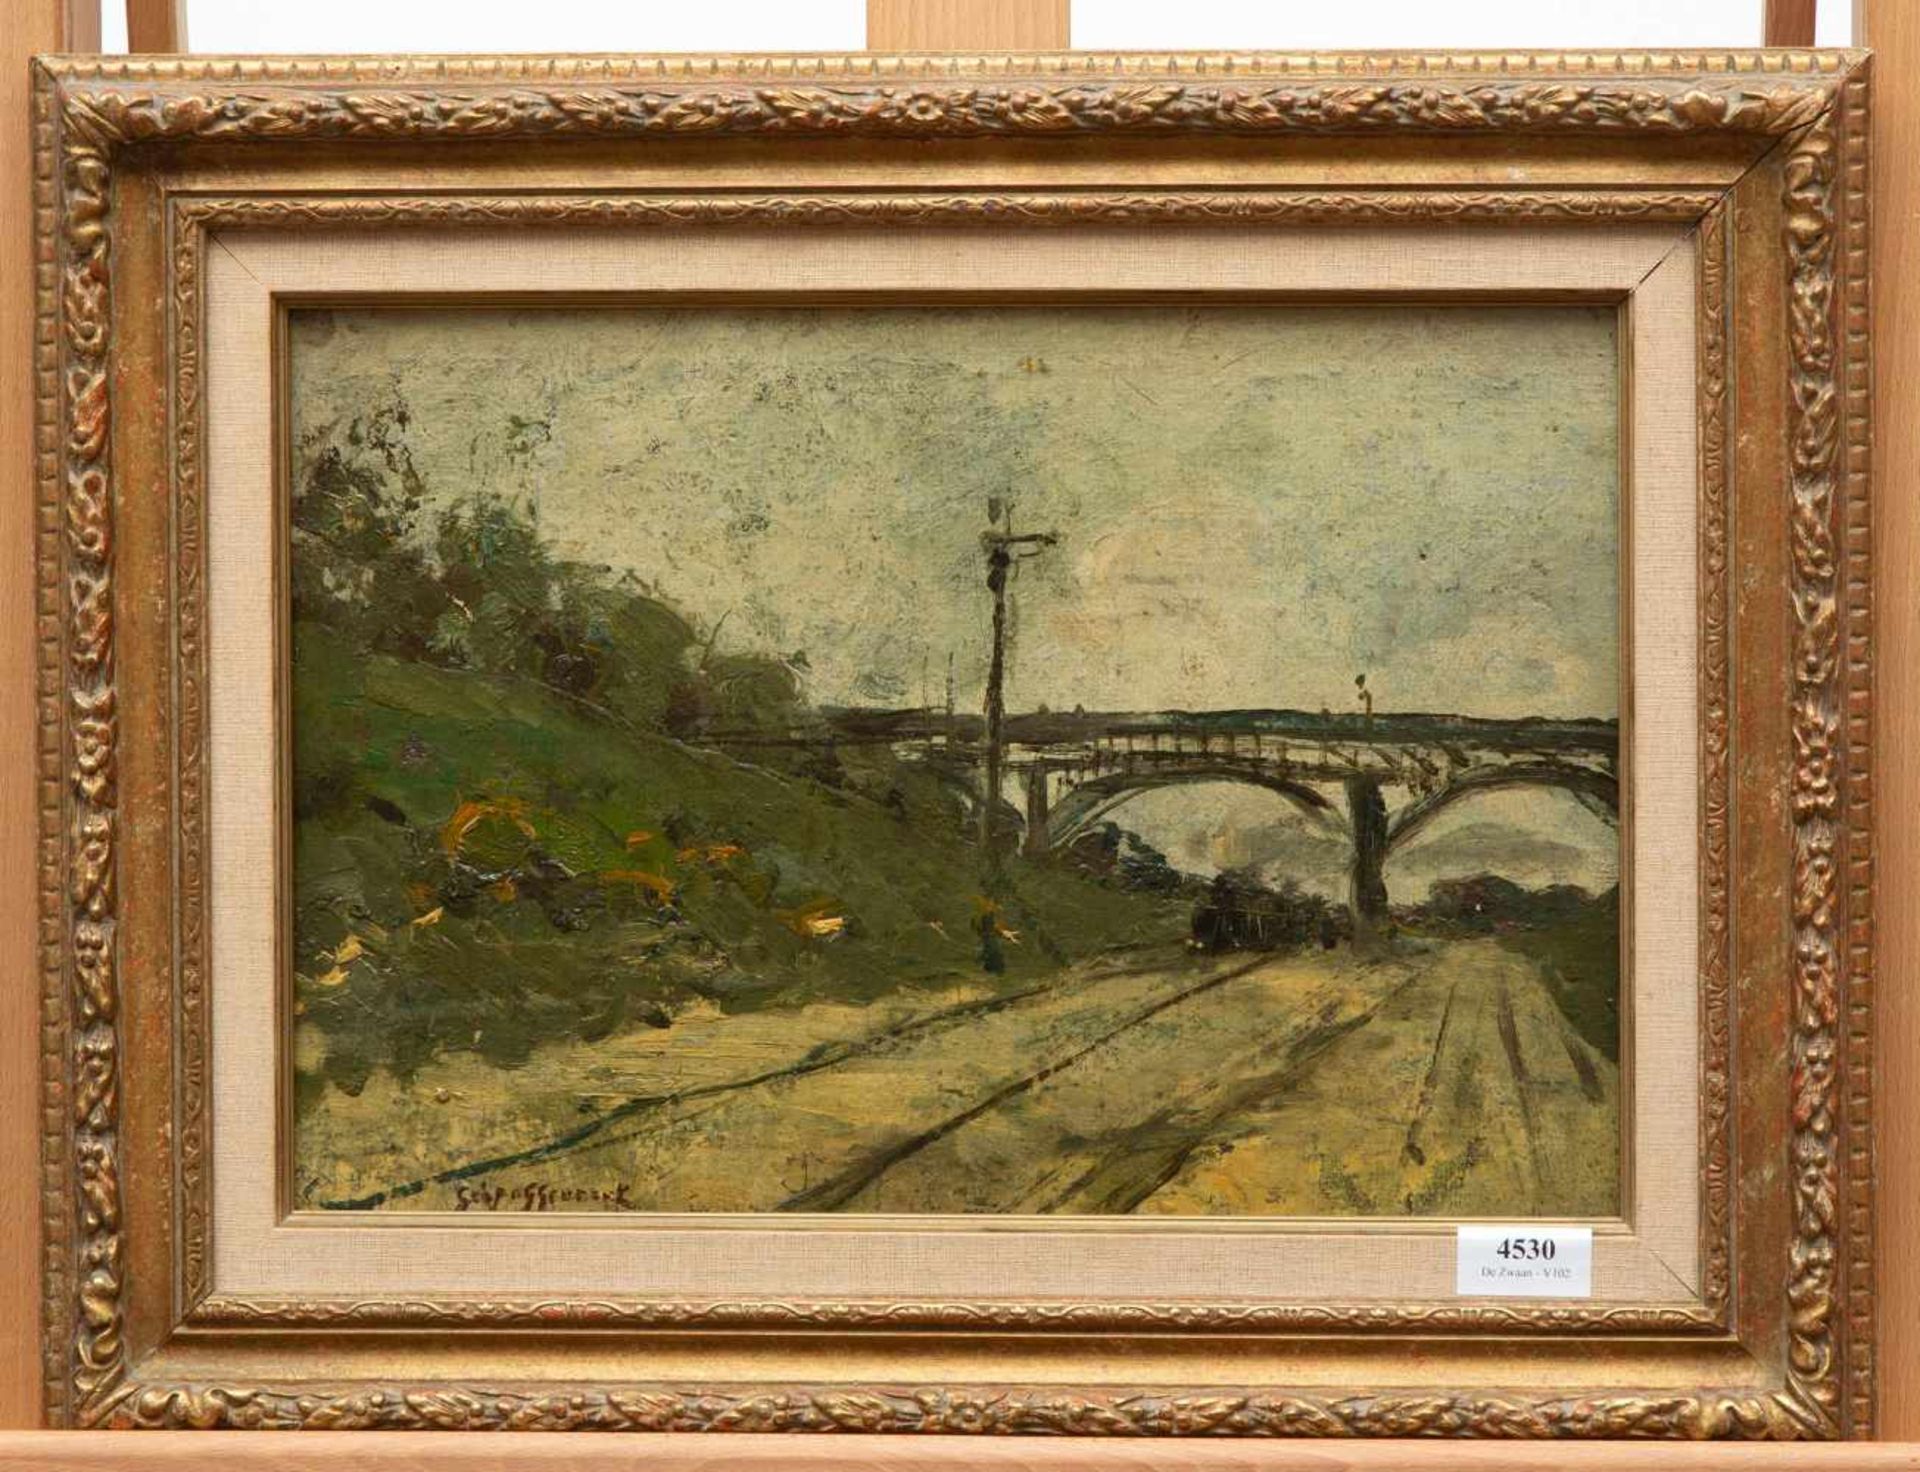 Geo Poggenbeek (1853-1903)Stoomtrein onder een brug, herkomst: wijlen mevrouw Angeline Thole, - Bild 2 aus 4